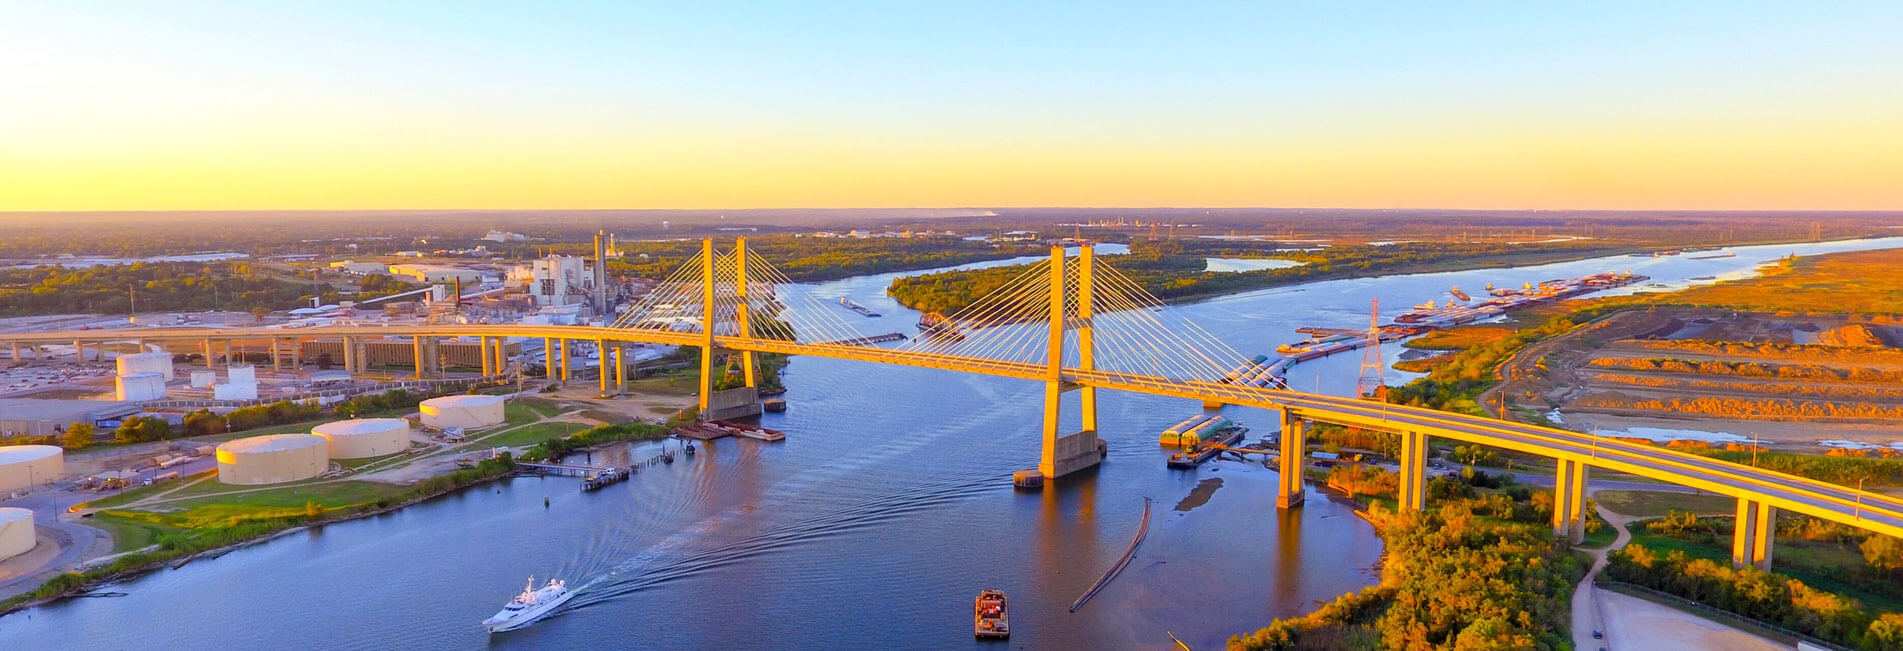 A bridge in Alabama at sunset